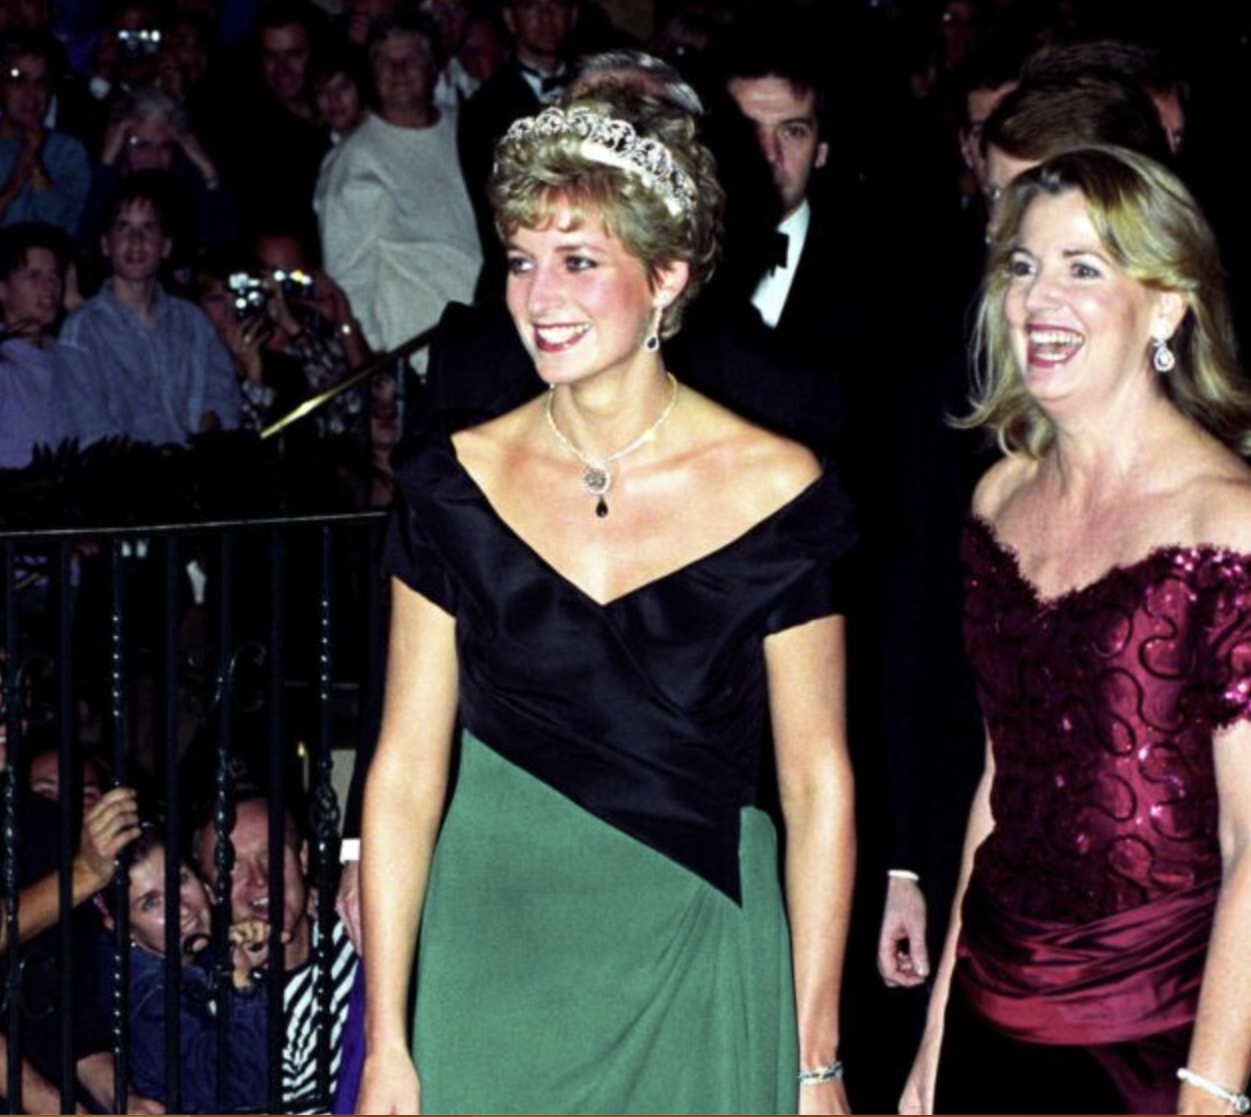 Princess Diana rarely seen photos